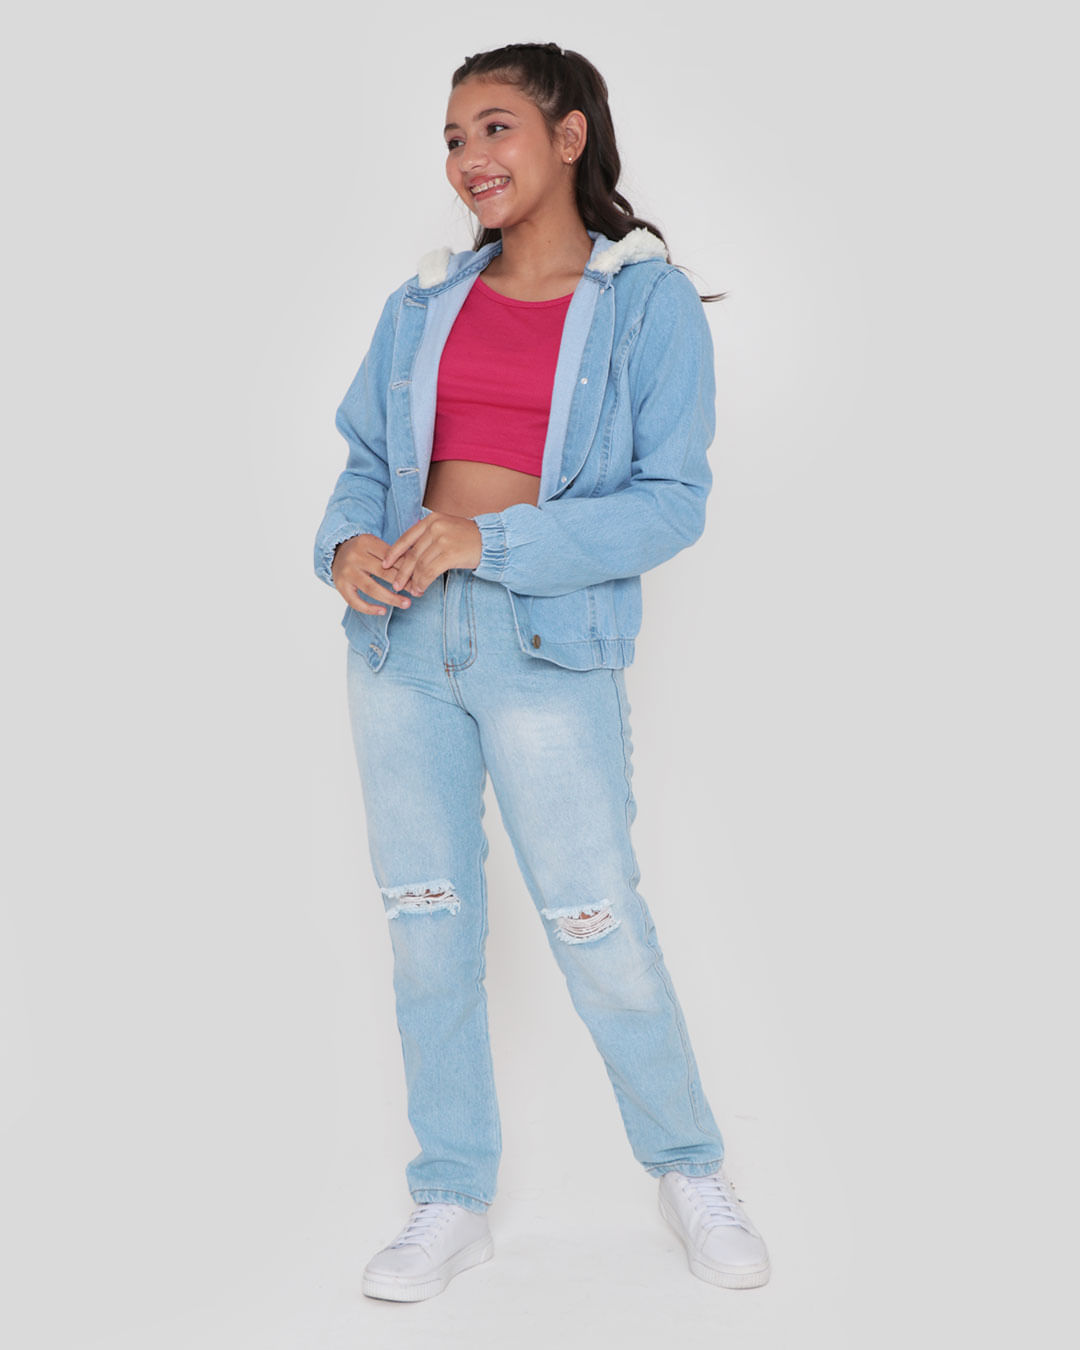 Jaqueta Jeans Juvenil Capuz Sherpa Azul Claro